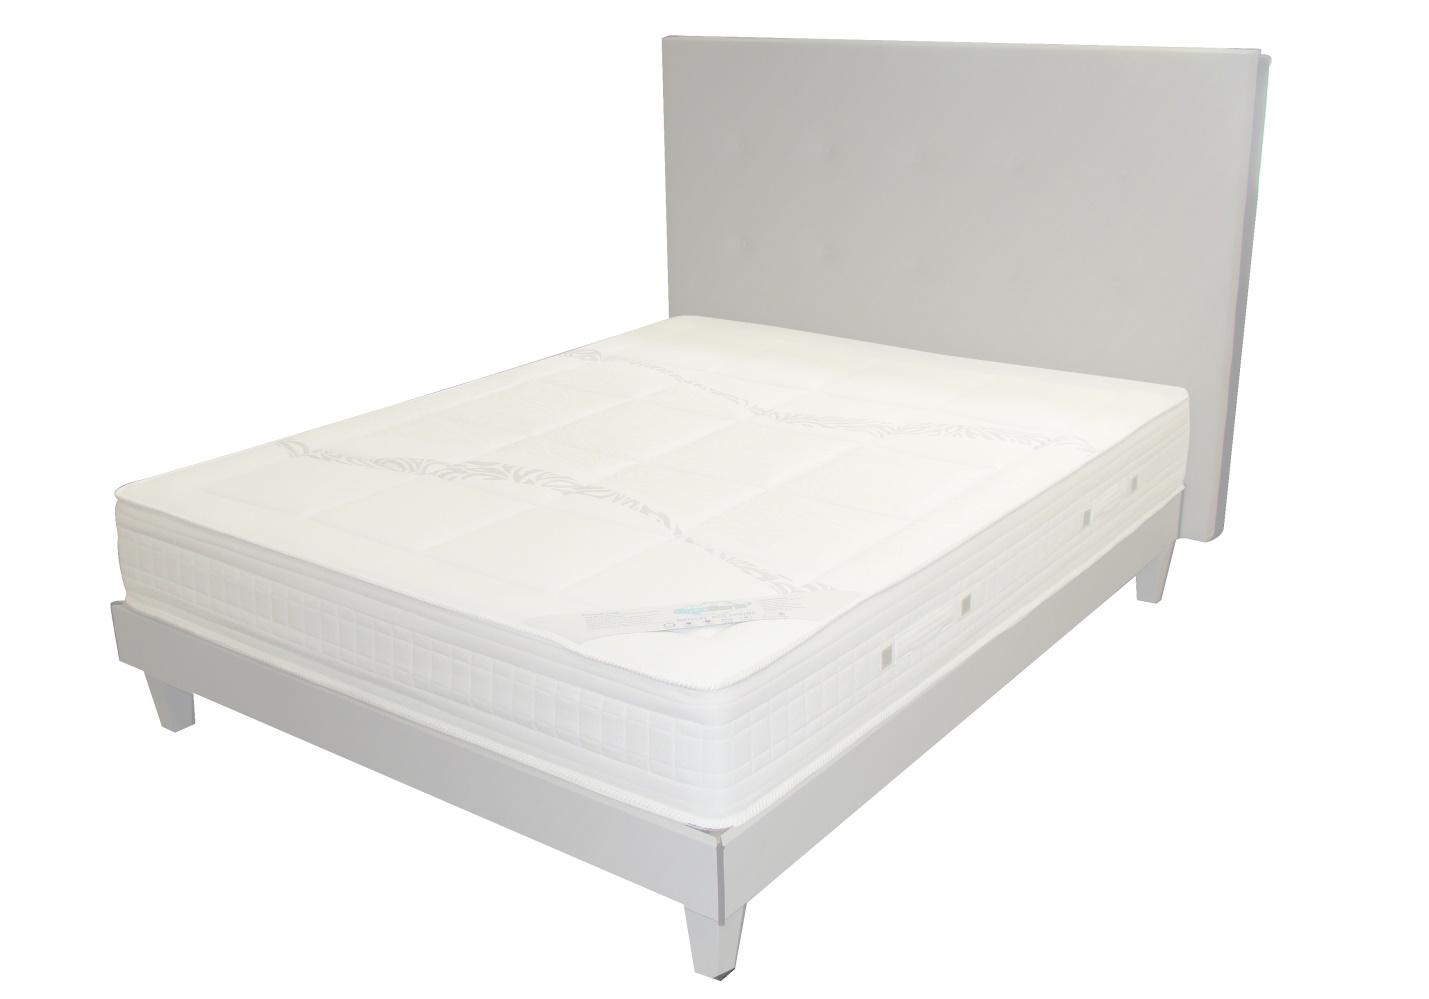 Plain soft bed